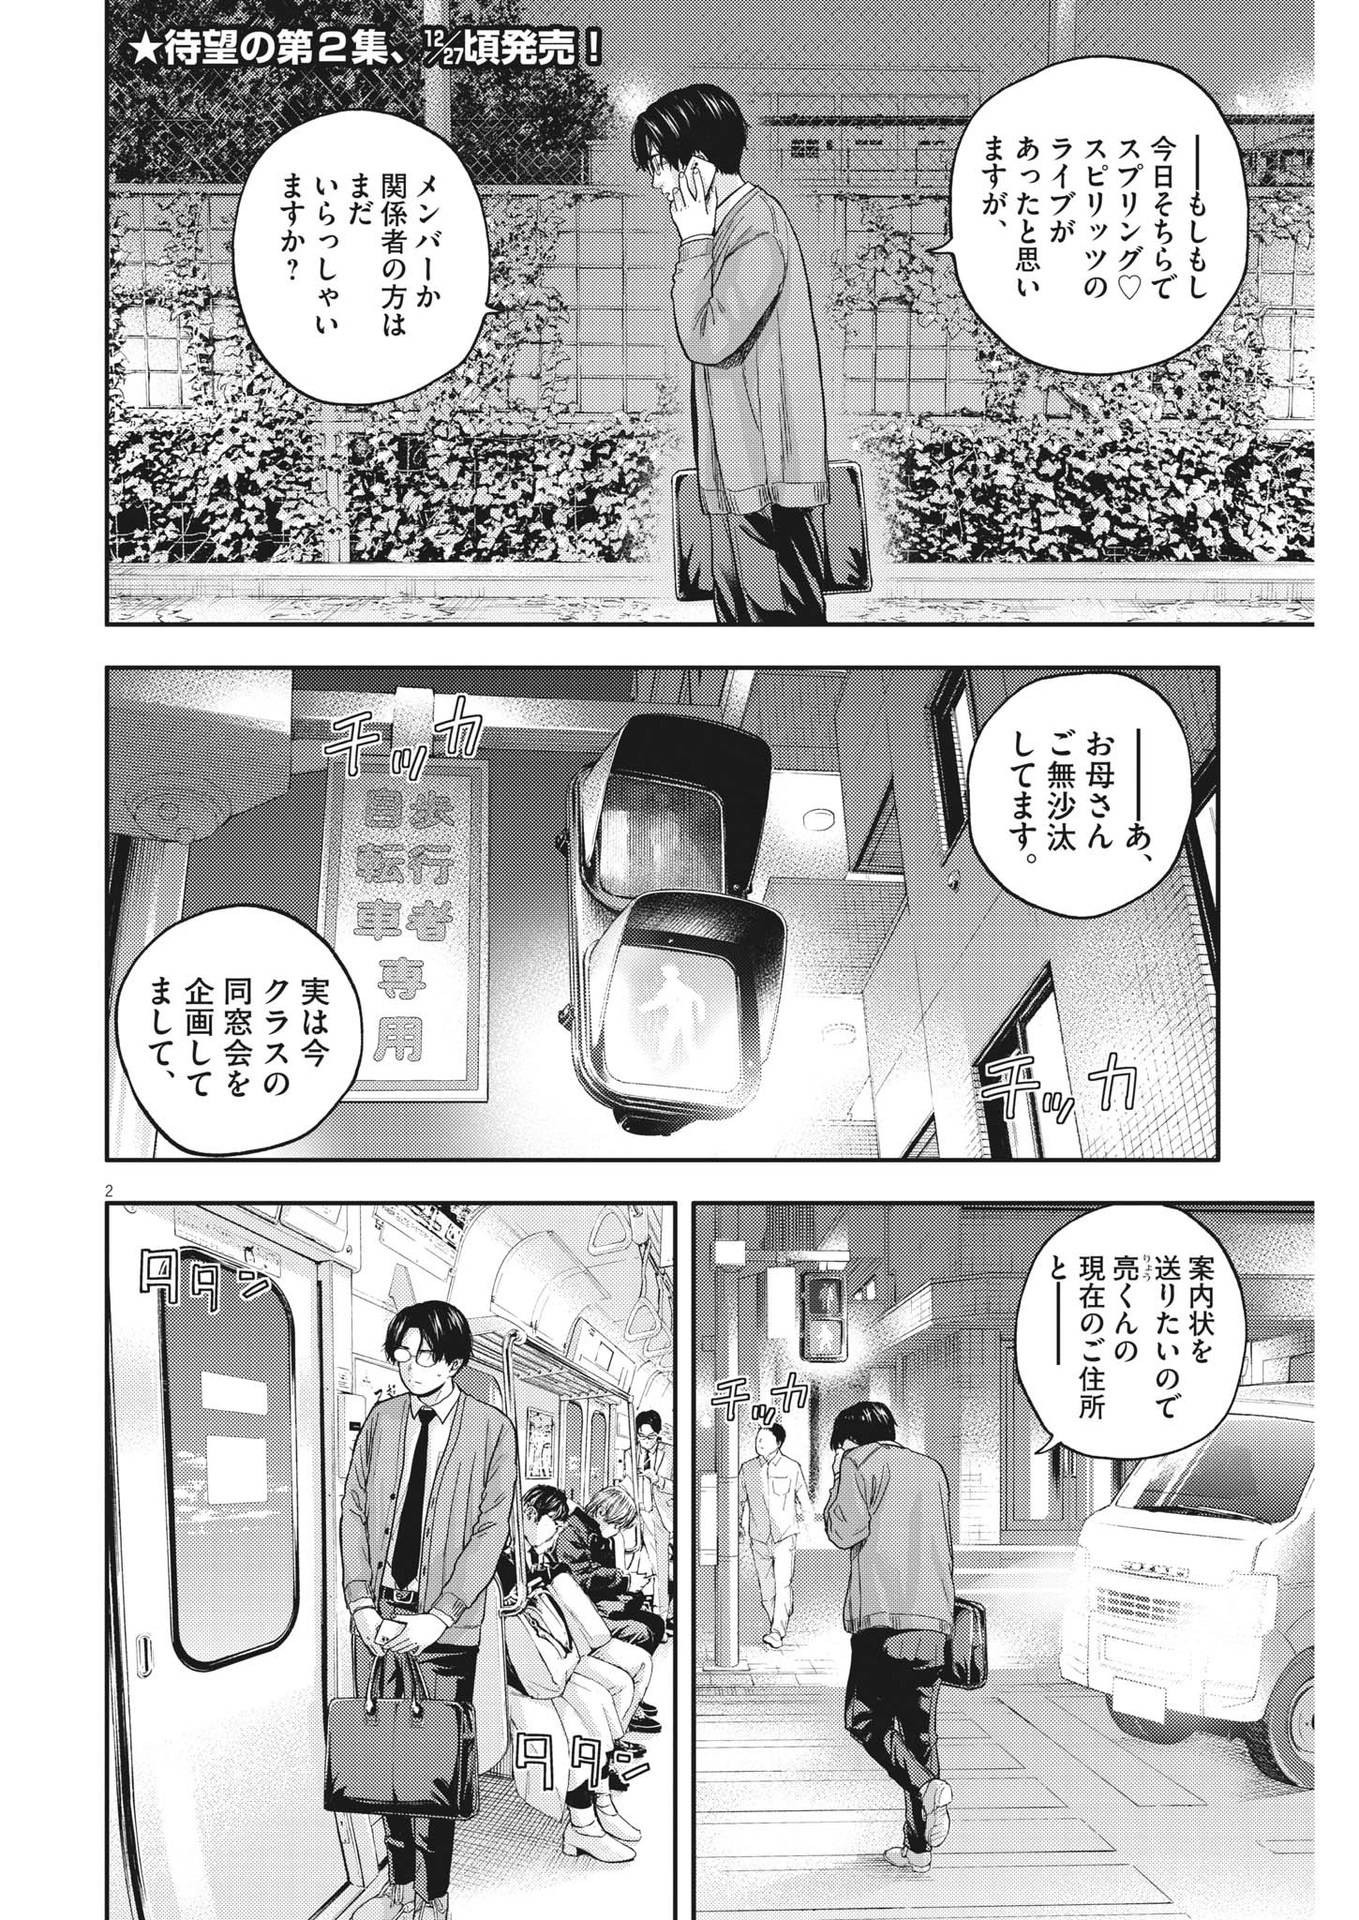 Yumenashi-sensei no Shinroshidou - Chapter 17 - Page 2